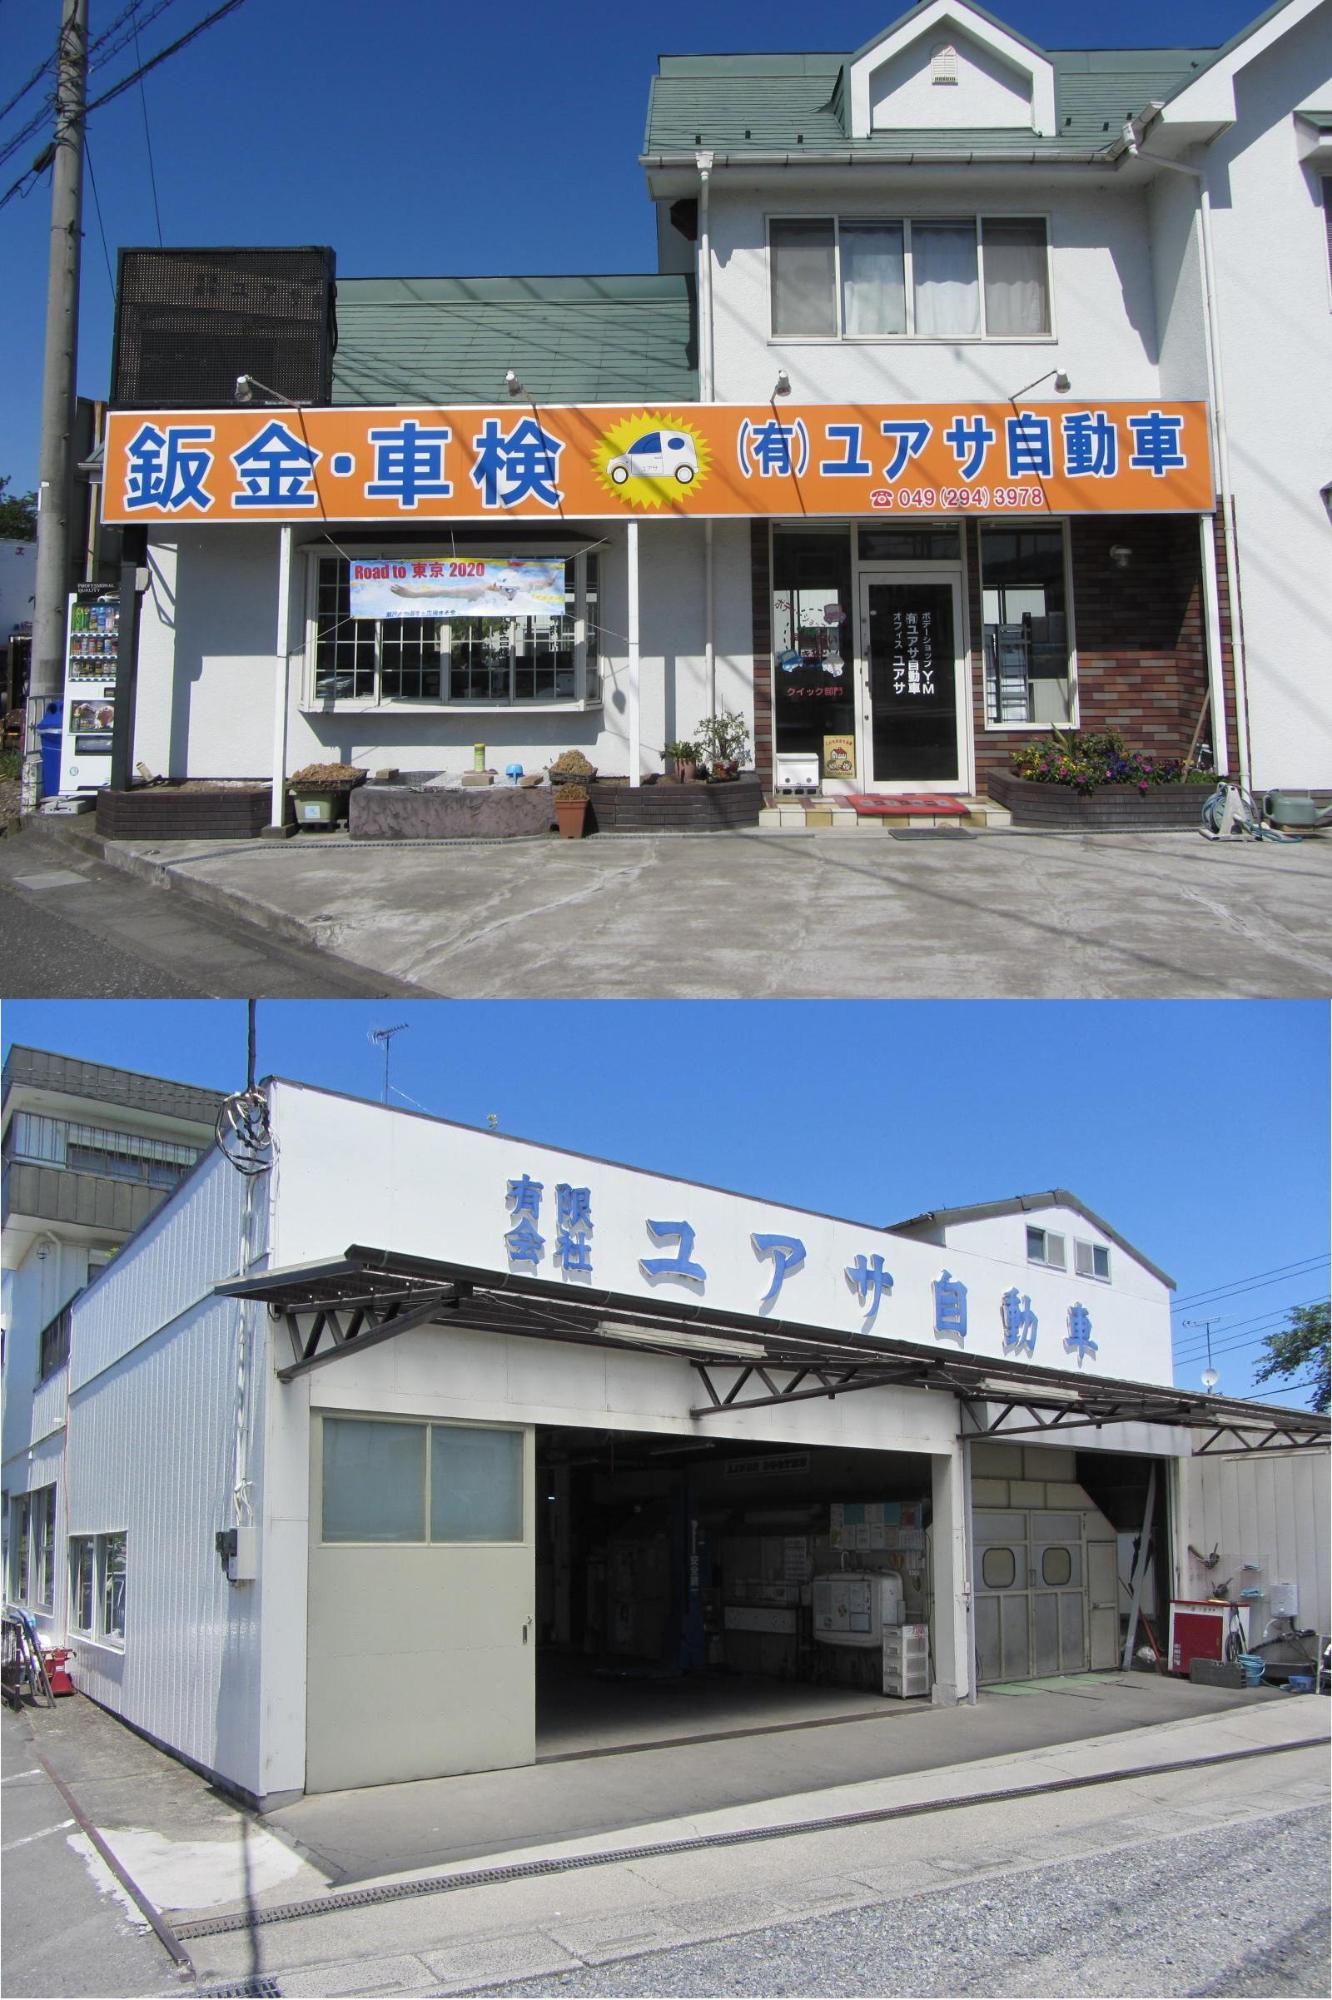 上：緑色の屋根に2階建て、入口はガラス戸のユアサ自動車外観写真、下：白を基調としたユアサ自動車の倉庫の写真